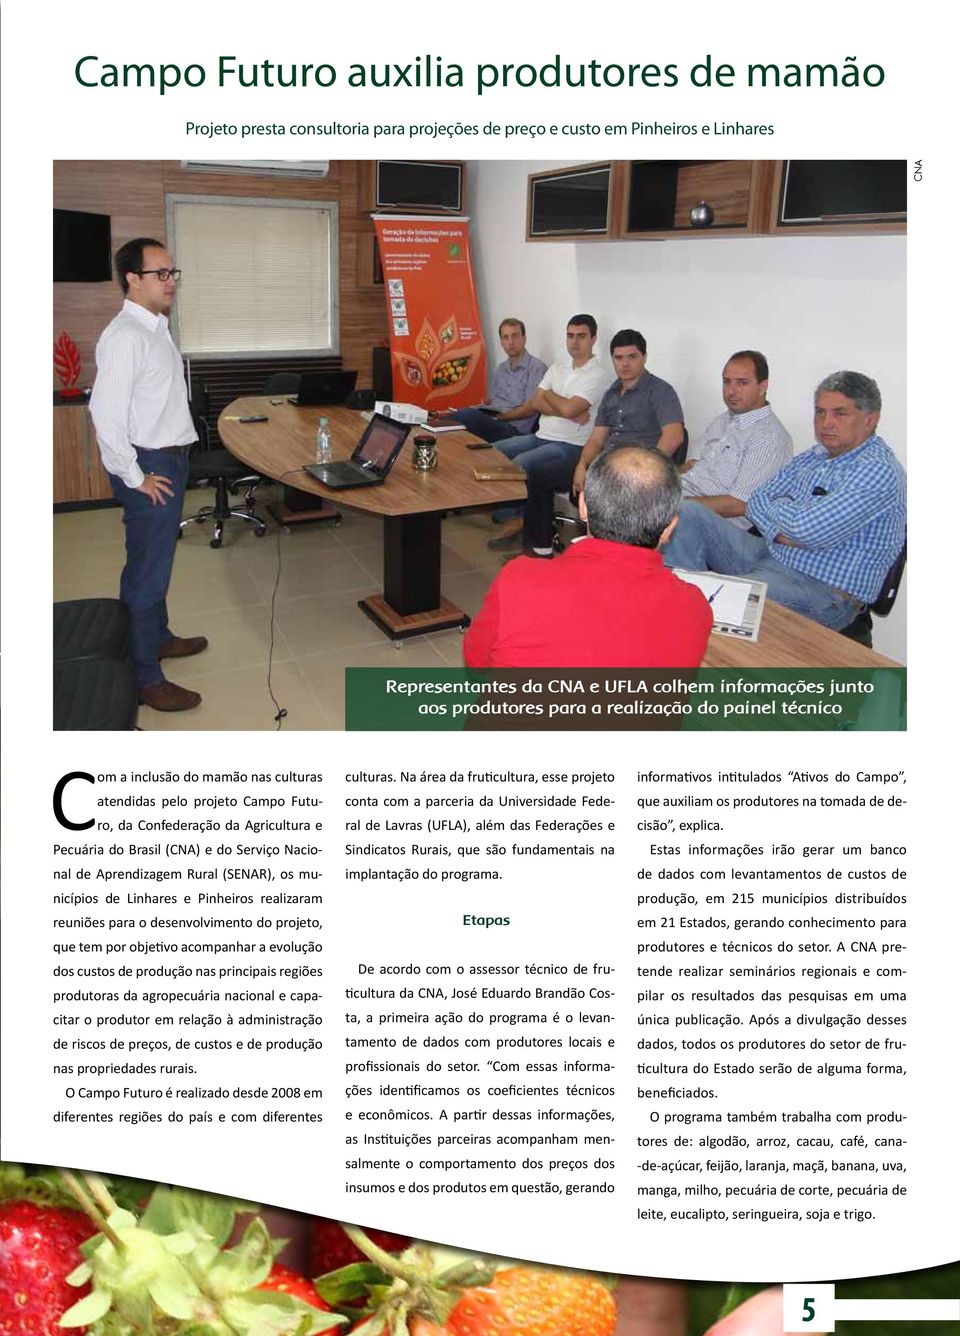 Aprendizagem Rural (SENAR), os municípios de Linhares e Pinheiros realizaram reuniões para o desenvolvimento do projeto, que tem por objetivo acompanhar a evolução dos custos de produção nas